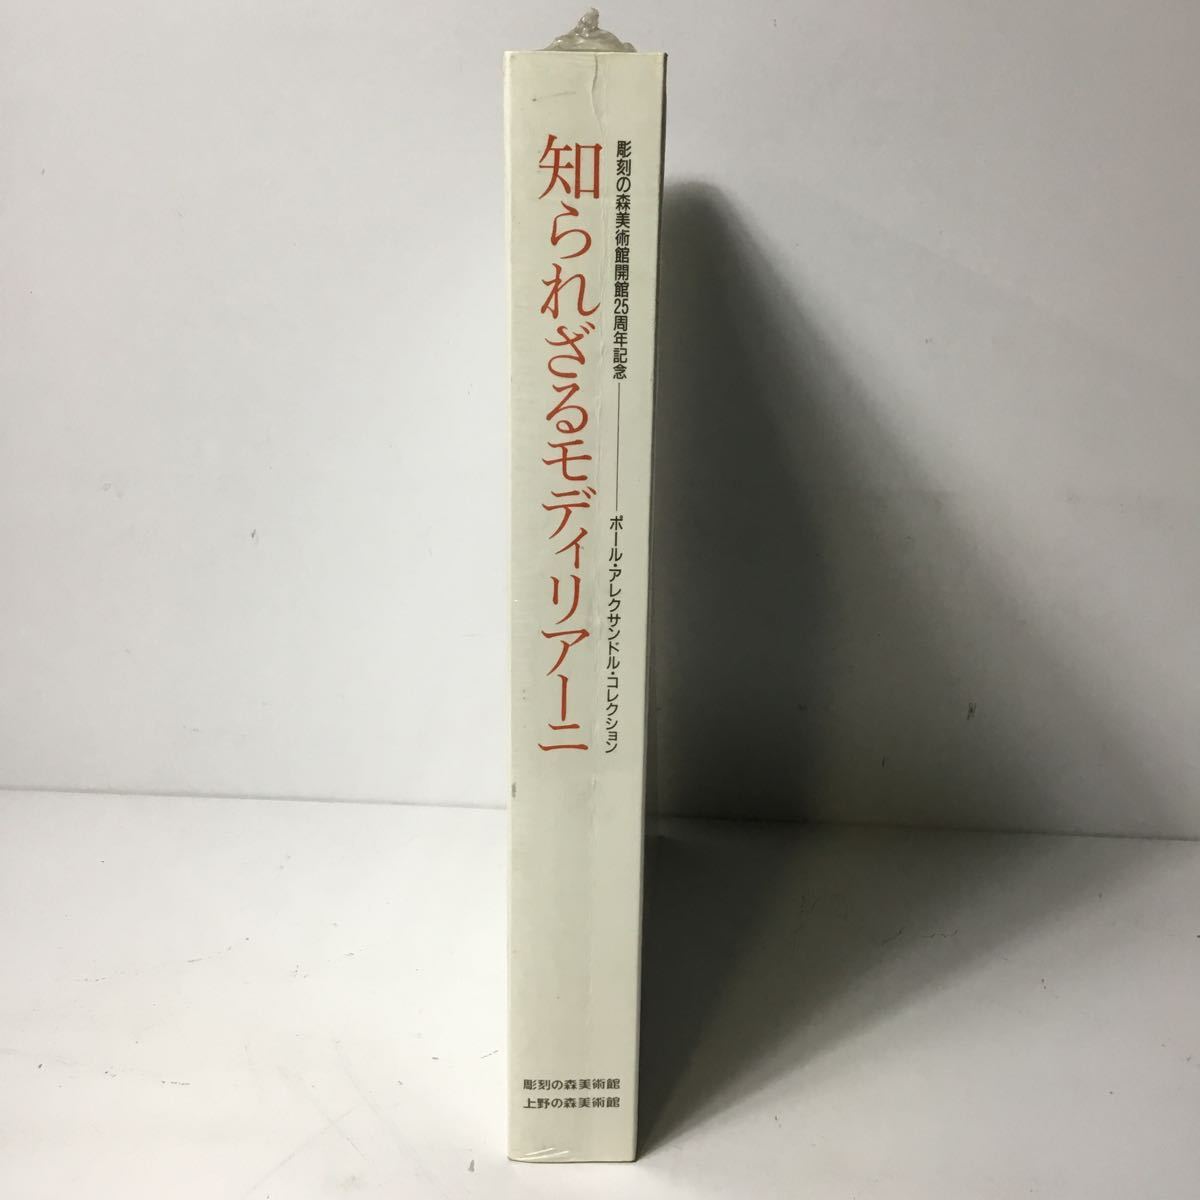 Ungeöffnet Unbekannt Modigliani Open Air Museum 25th Anniversary Art Book Buchkatalog Kunstbuch TS2B1, Malerei, Kunstbuch, Sammlung von Werken, Illustrierter Katalog